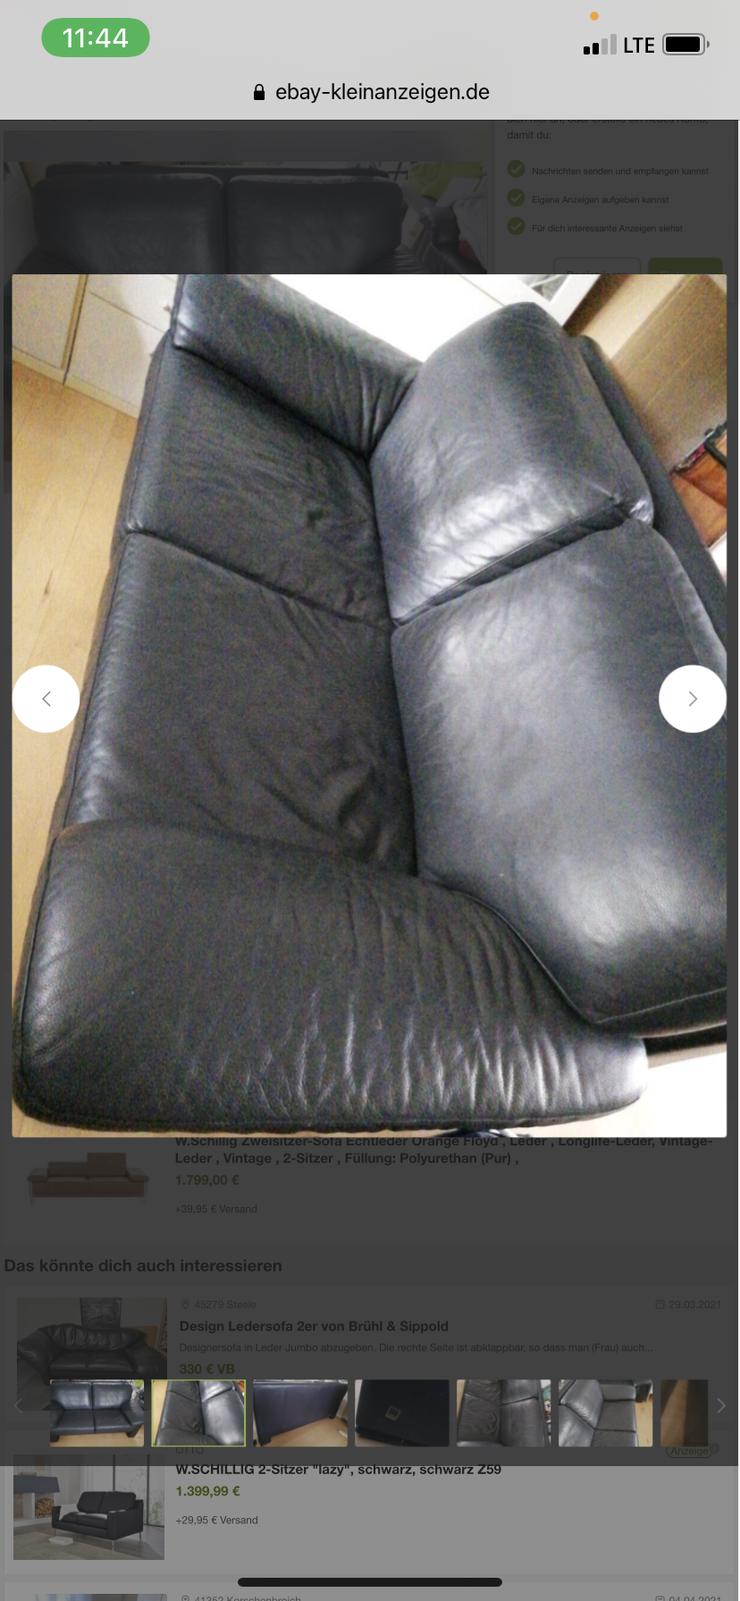 W. Schillig 2x Zweisitzer mit Hocker, schwarz,  (ca. 175Lx93T) plus quadratischer Lederhocker 62x62, sehr gut erhalten, echtes dickes Leder - Sofas & Sitzmöbel - Bild 1